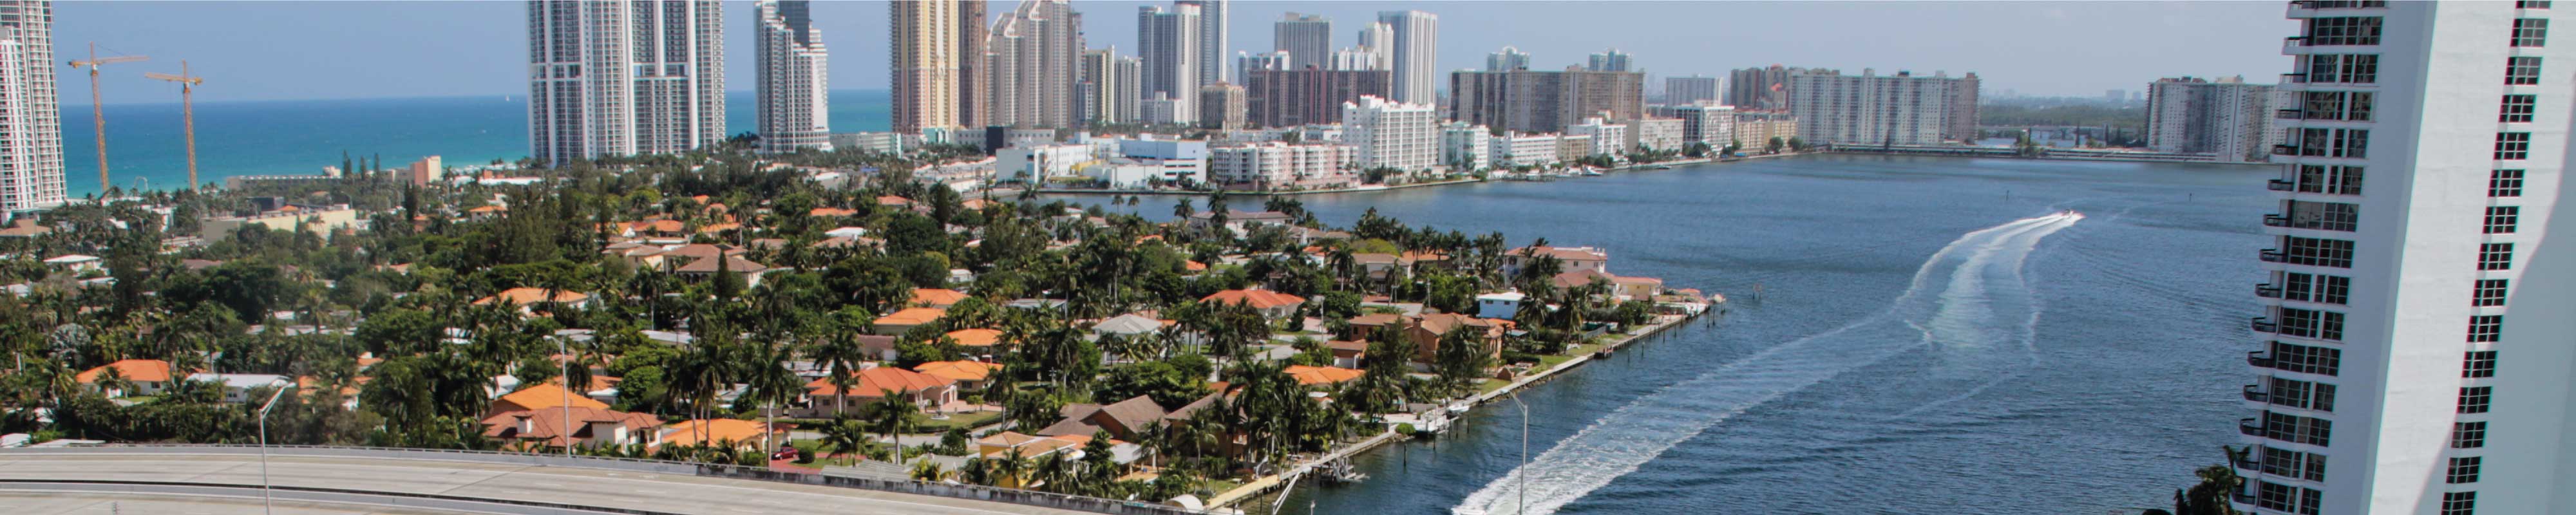 Consigna Equipaje | South Beach en Miami - Nannybag